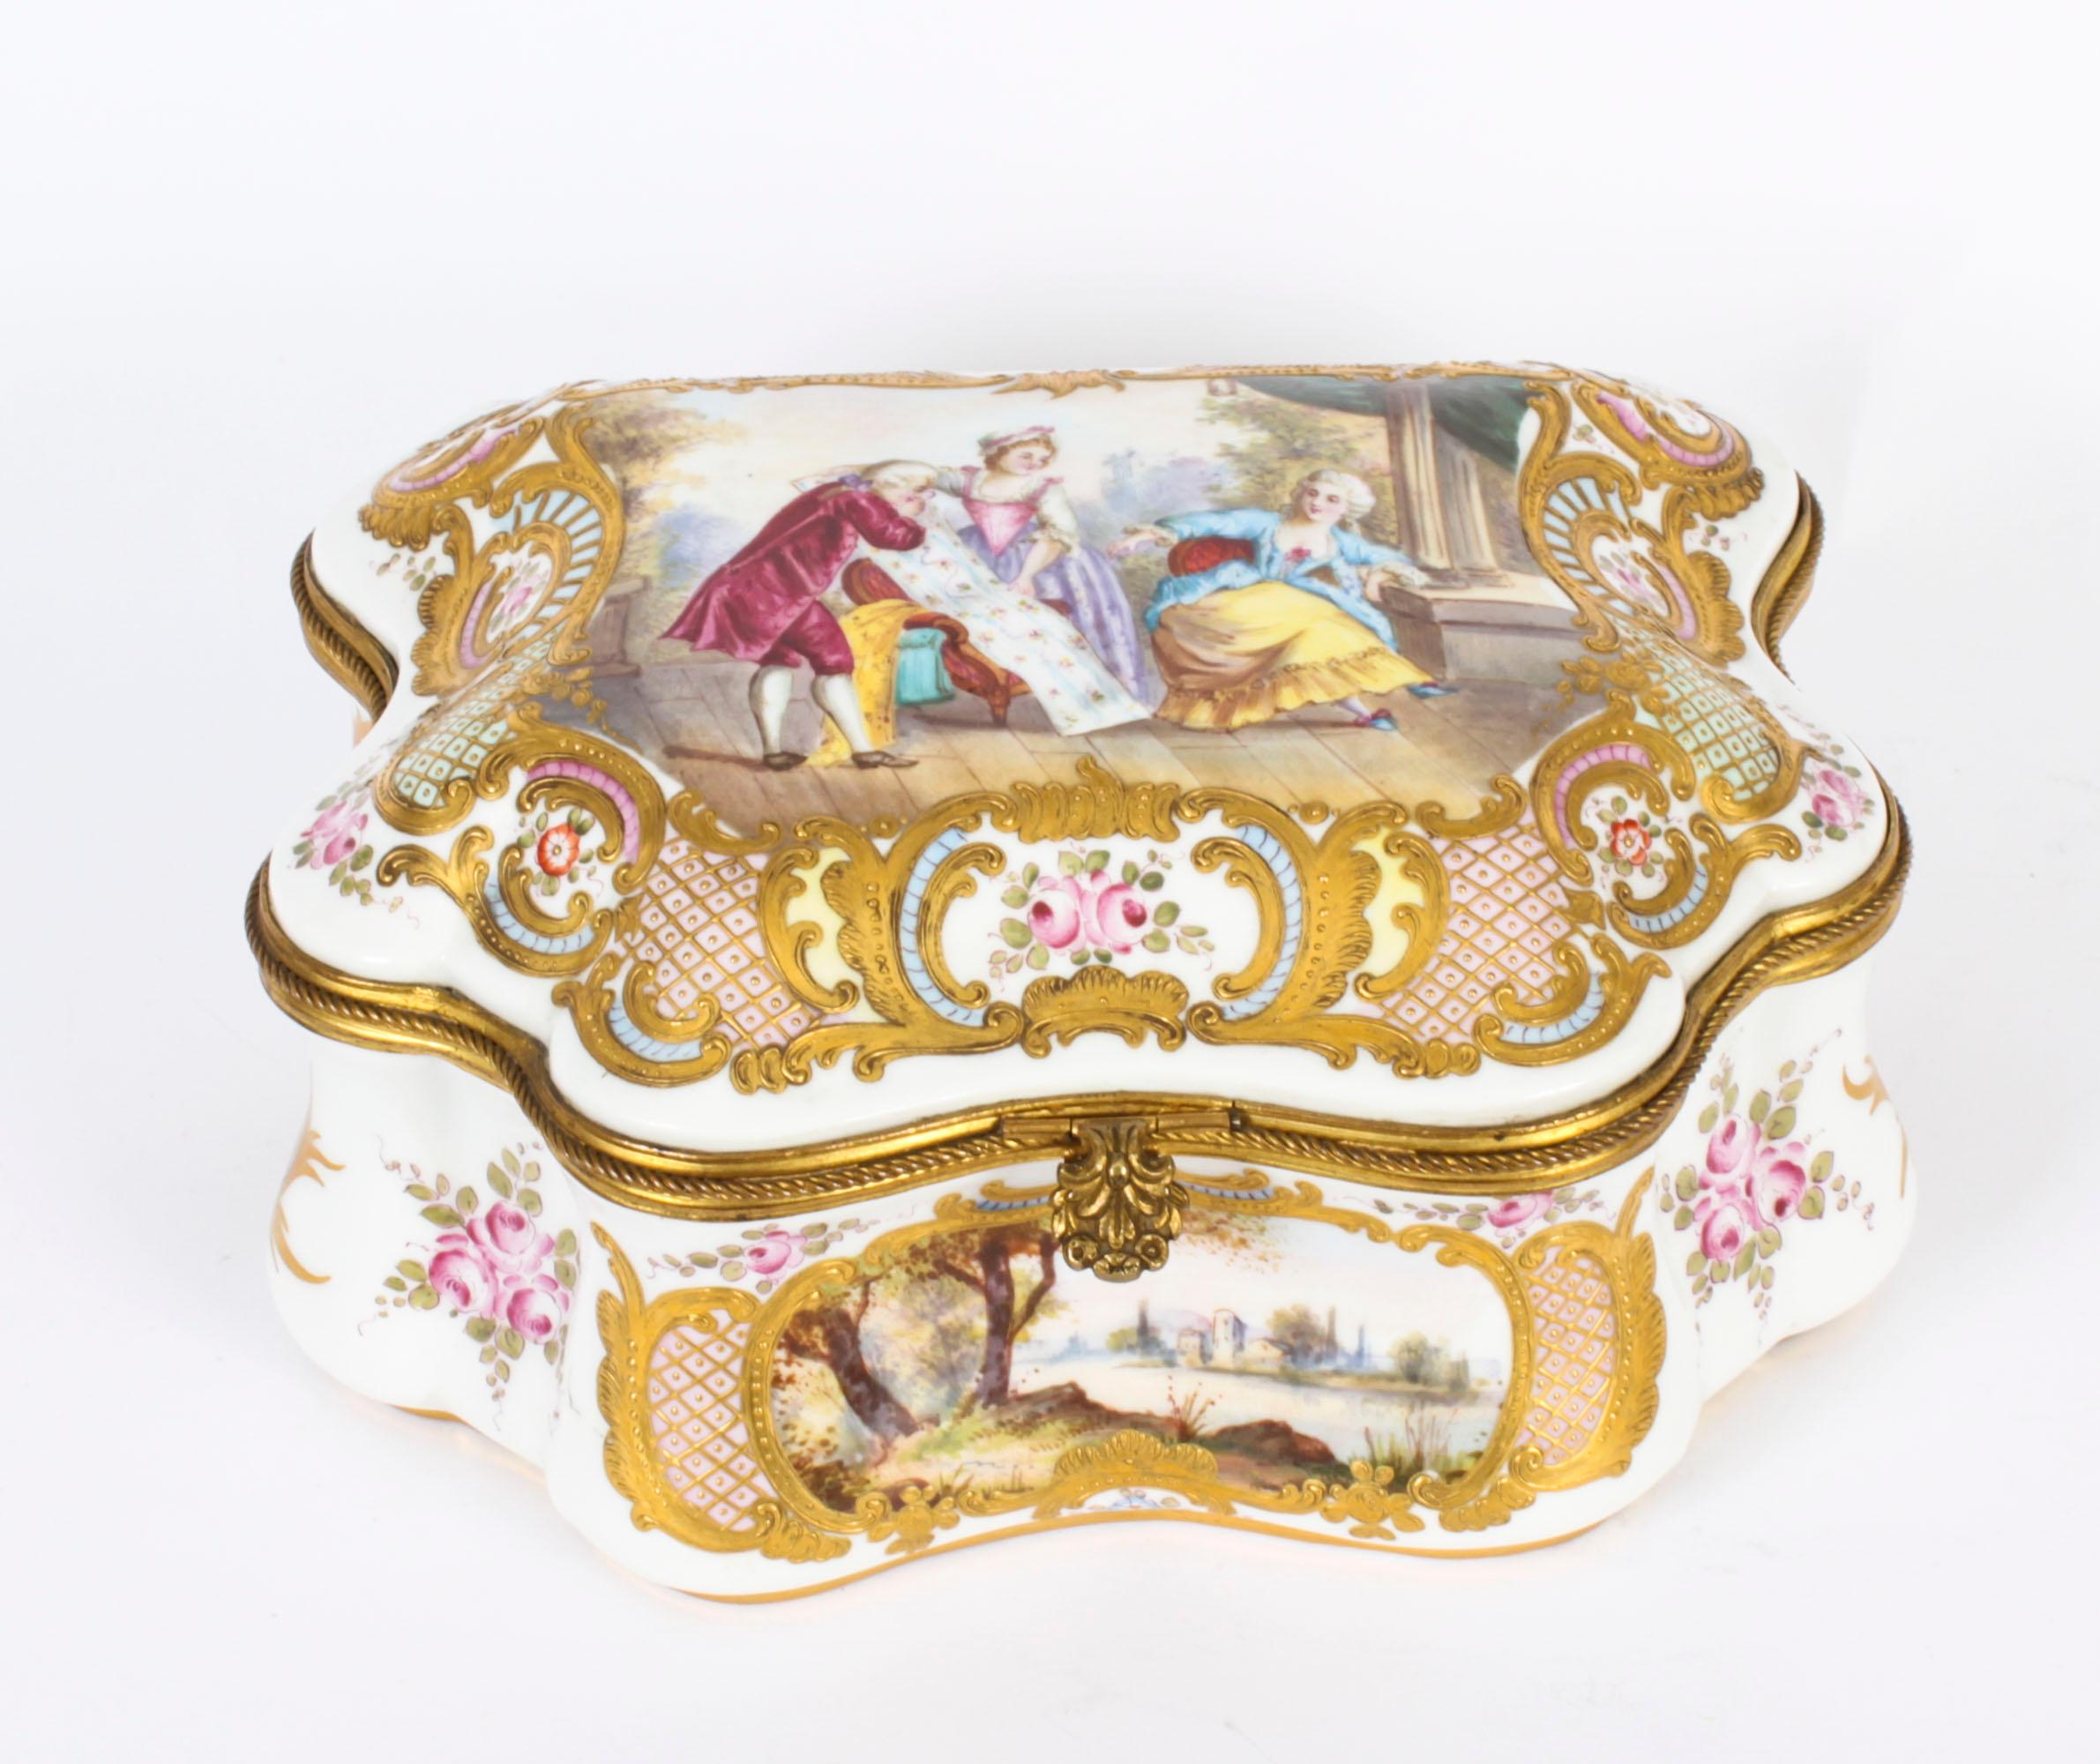 Dies ist ein fabelhaftes, größer als üblich, antike Französisch Sèvres Porzellan Ormolu montiert  Schatulle, ca. 1860 datiert.

Der geformte Scharnierdeckel ist mit einem handgemalten Liebespaar in einer reich vergoldeten Umrandung verziert, die